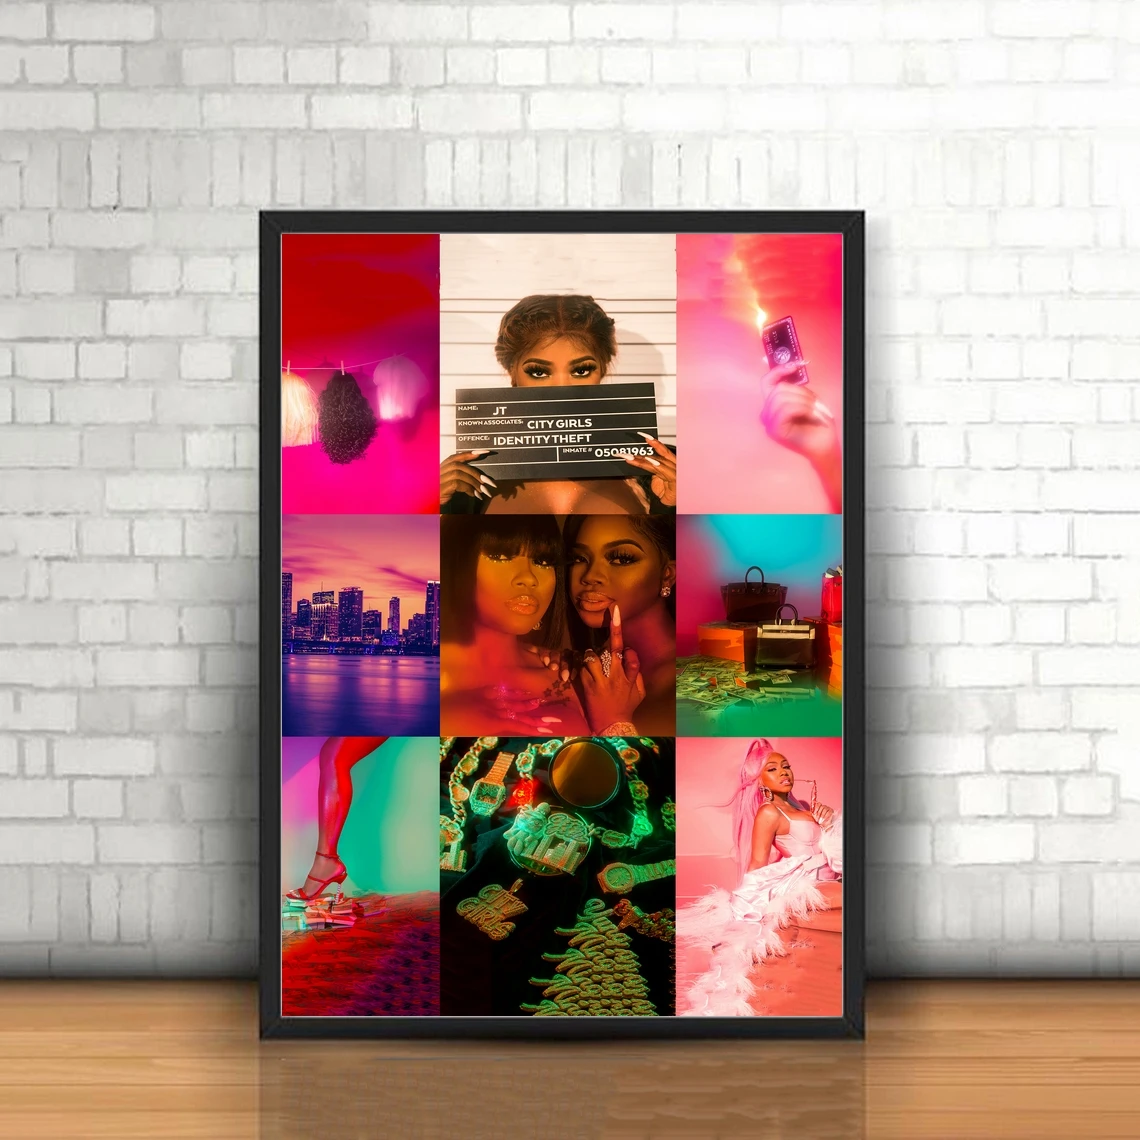 

Постер с изображением музыкального альбома City Girls On Lock, Постер в стиле рэп, хип-хоп, поп-музыка, звезда, Холщовый постер, печать (без рамки)